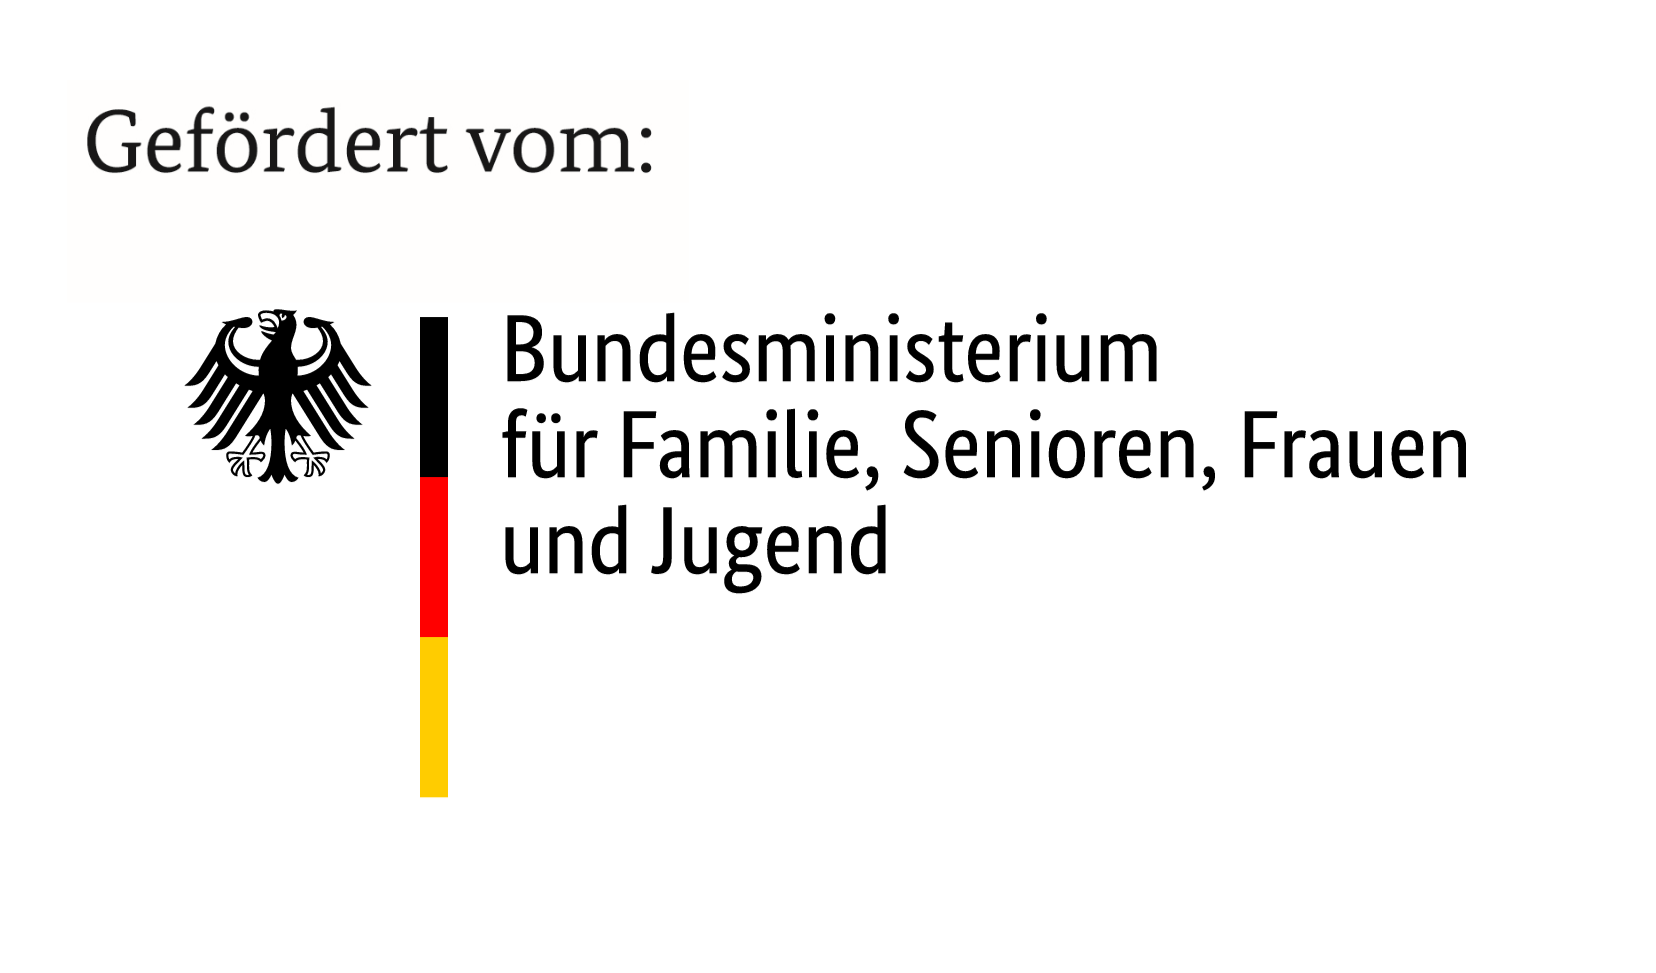 Die Abbildung zeigt das Logo des BMFSFJ - dem Bundesministerium für Familie, Senioren, Frauen und Jugend © BMFSFJ